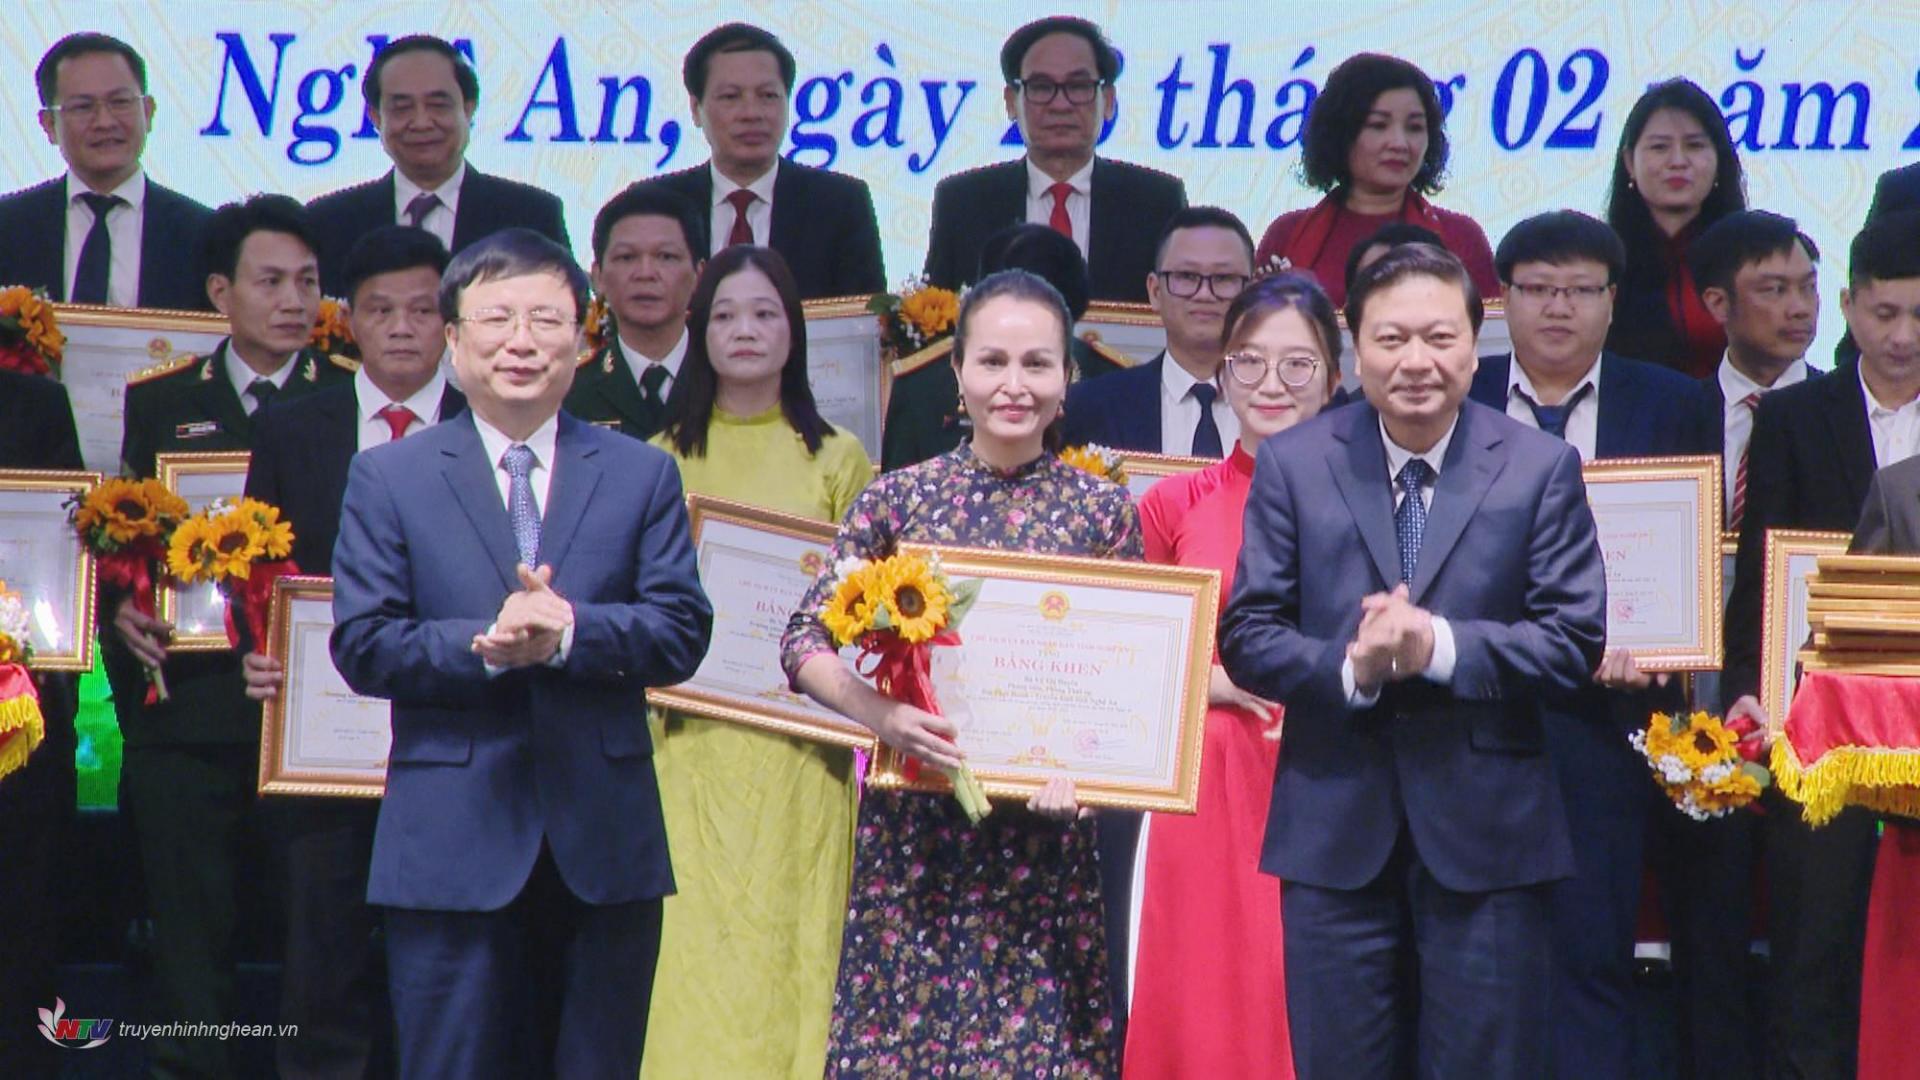 Nhà báo An Duyên - Phòng Thời sự, Đài PT-TH Nghệ An nhận Bằng khen tại hội nghị.